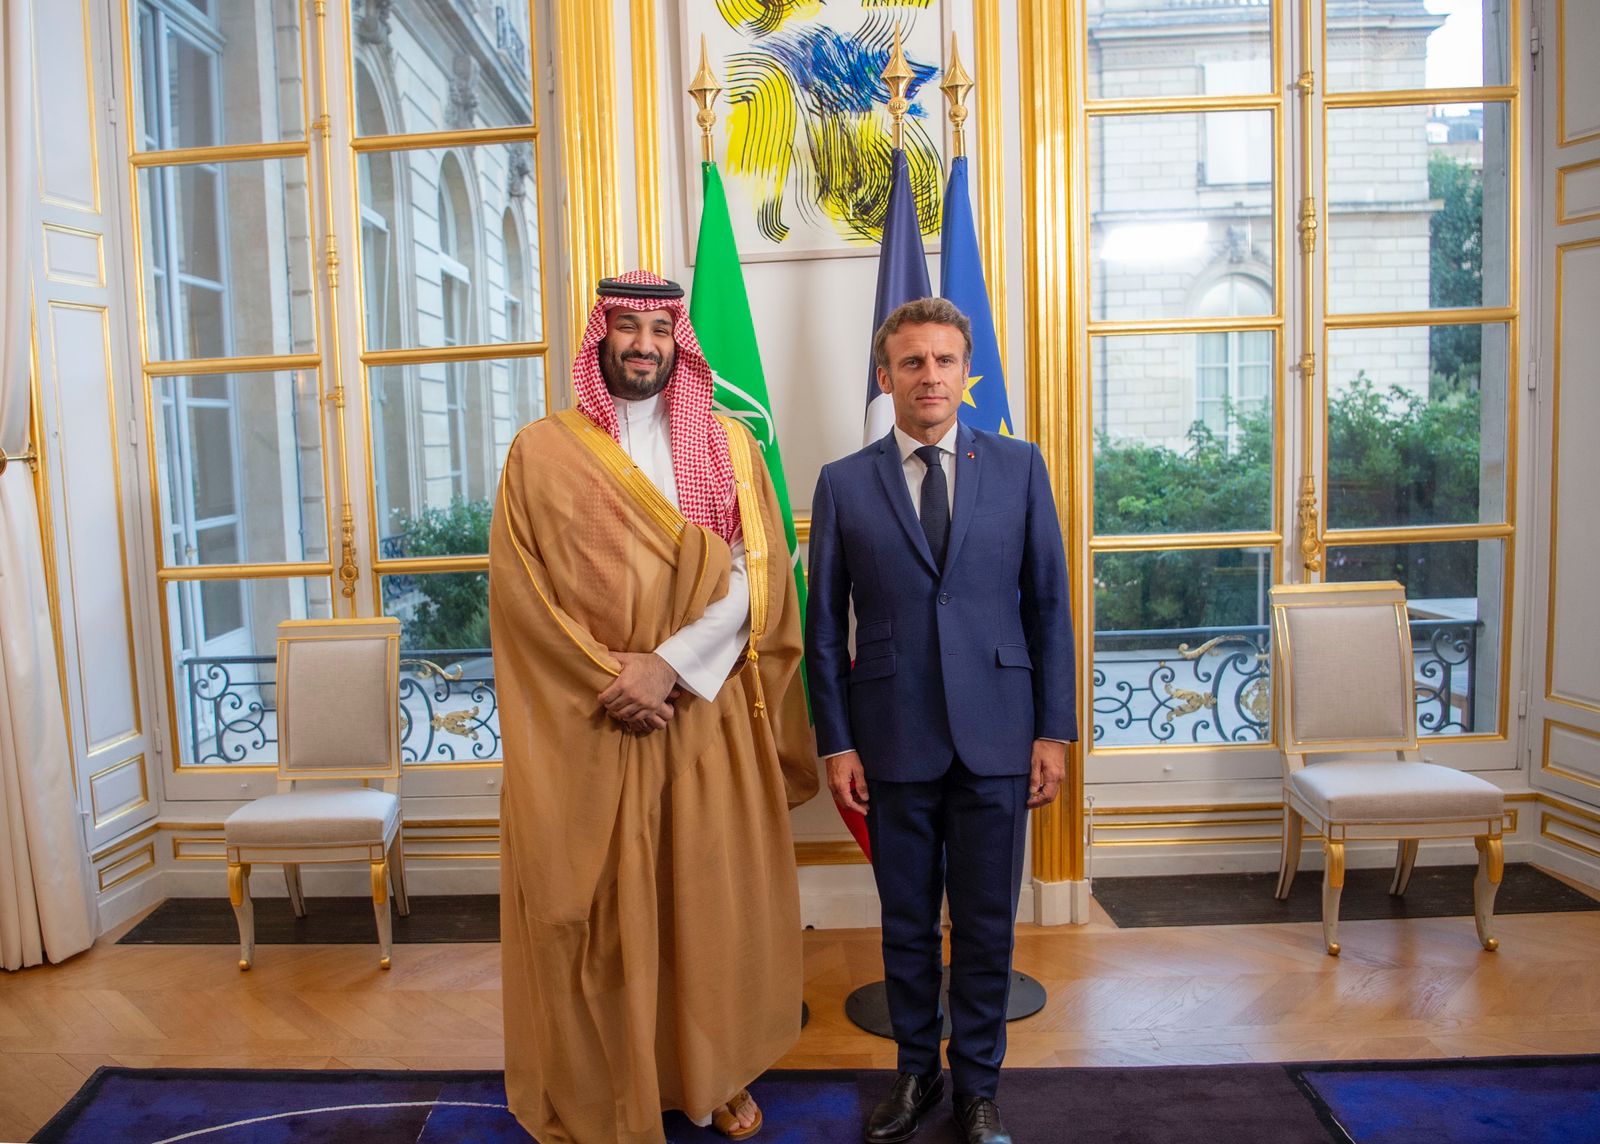 سمو-ولي-العهد-يلتقي-الرئيس-الفرنسي-في-قصر-الإليزيه-بالعاصمة-باريس-صور